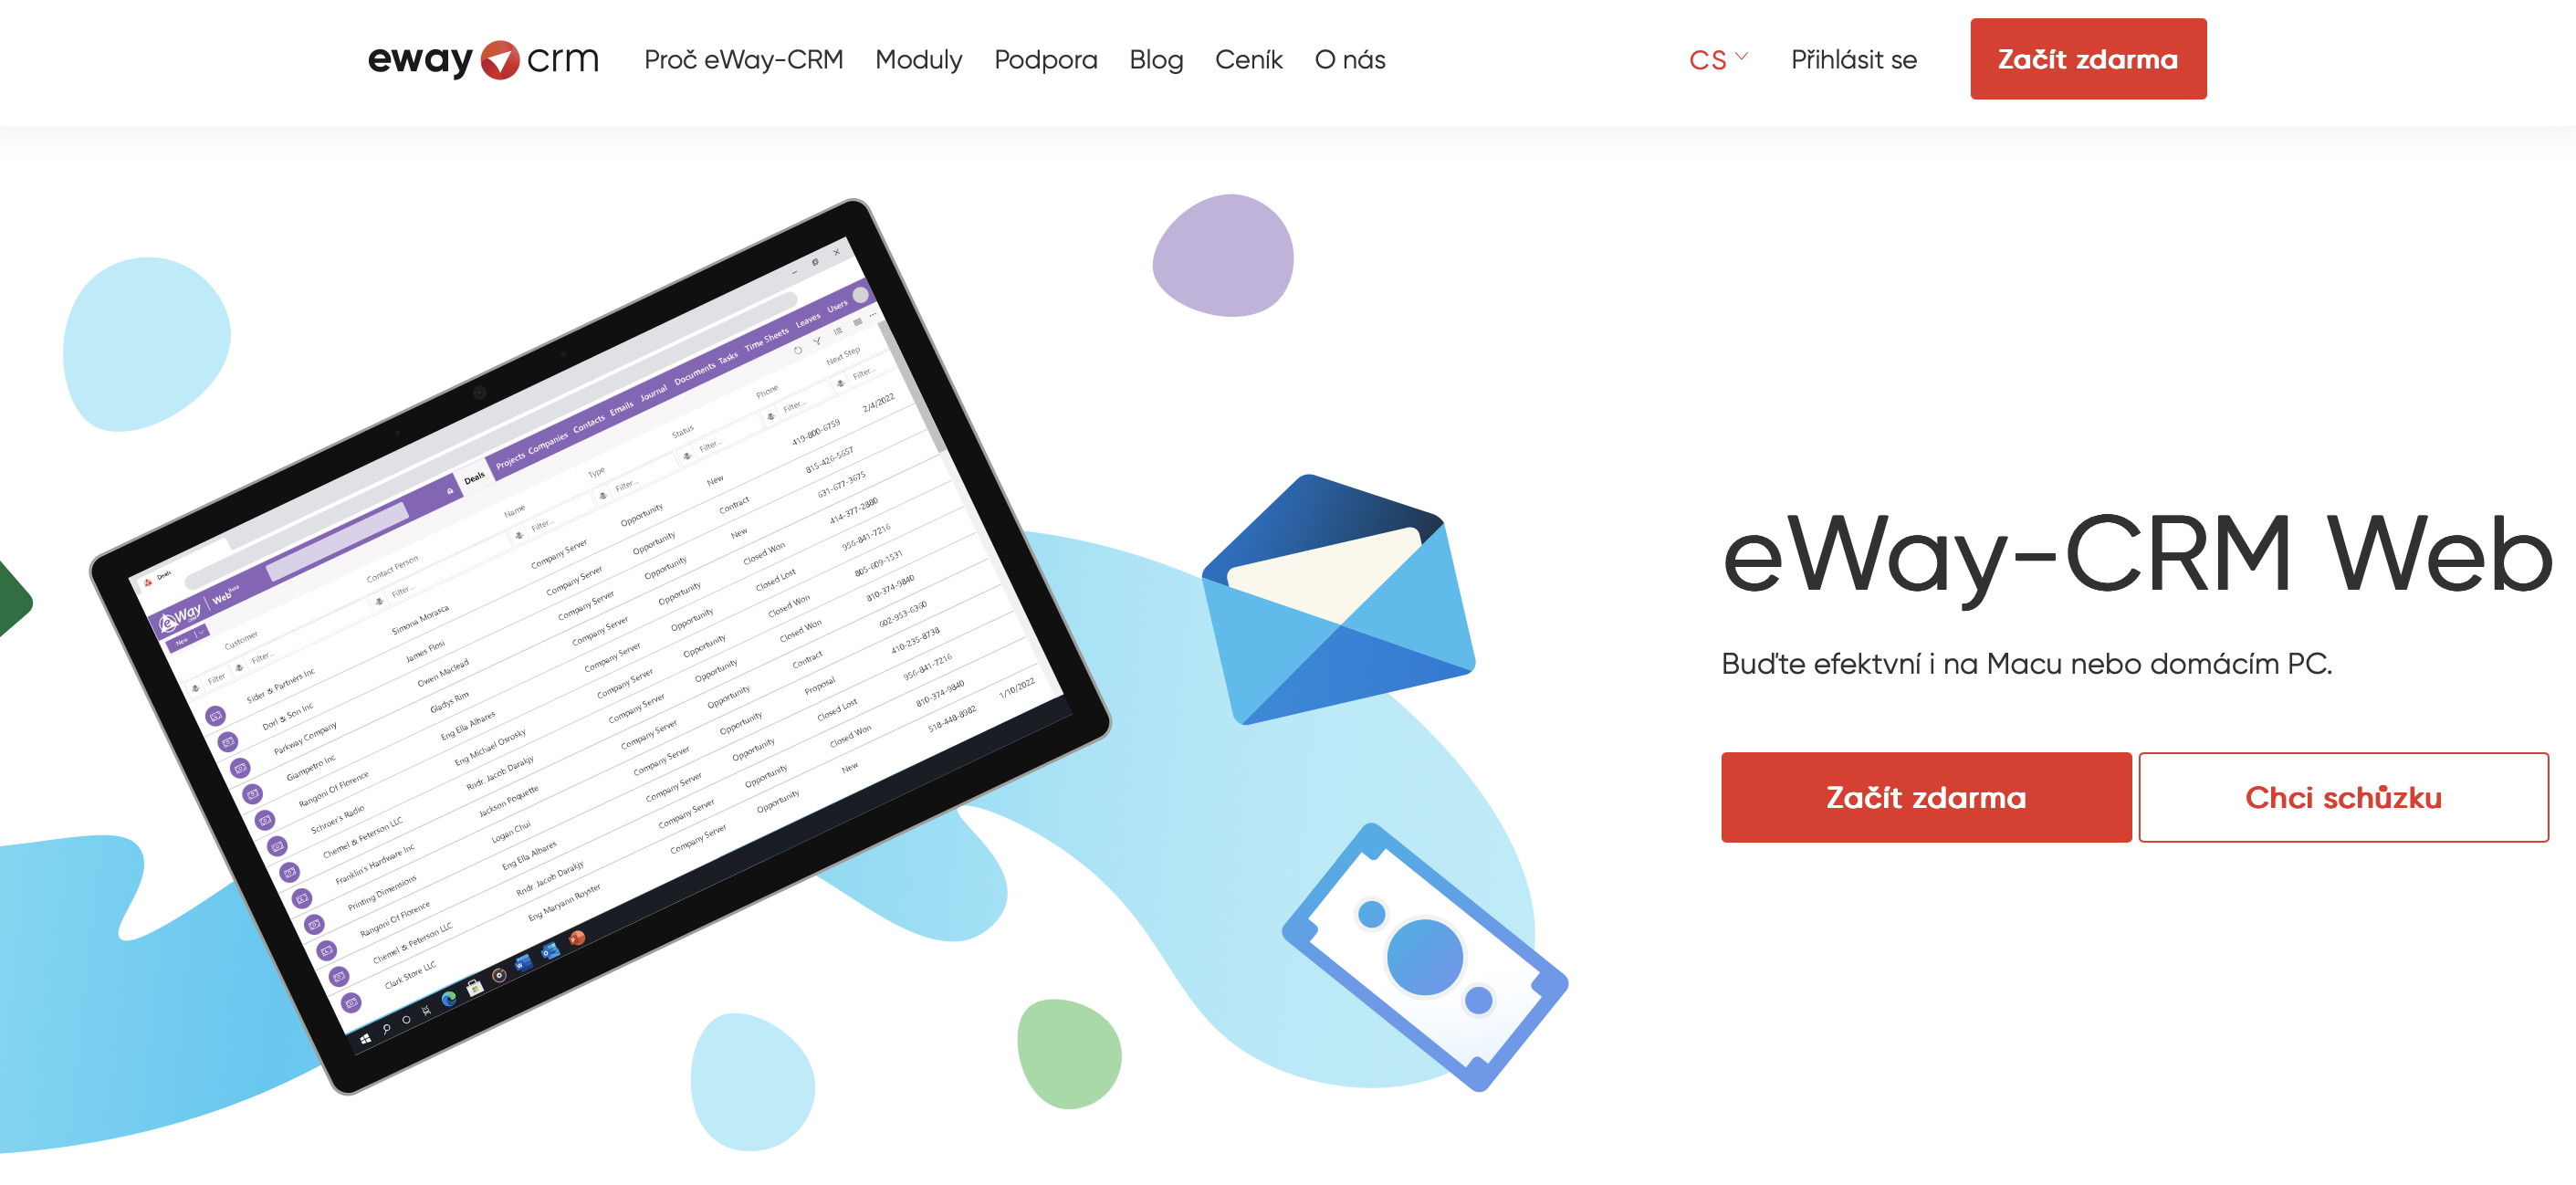 eWay-CRM Web